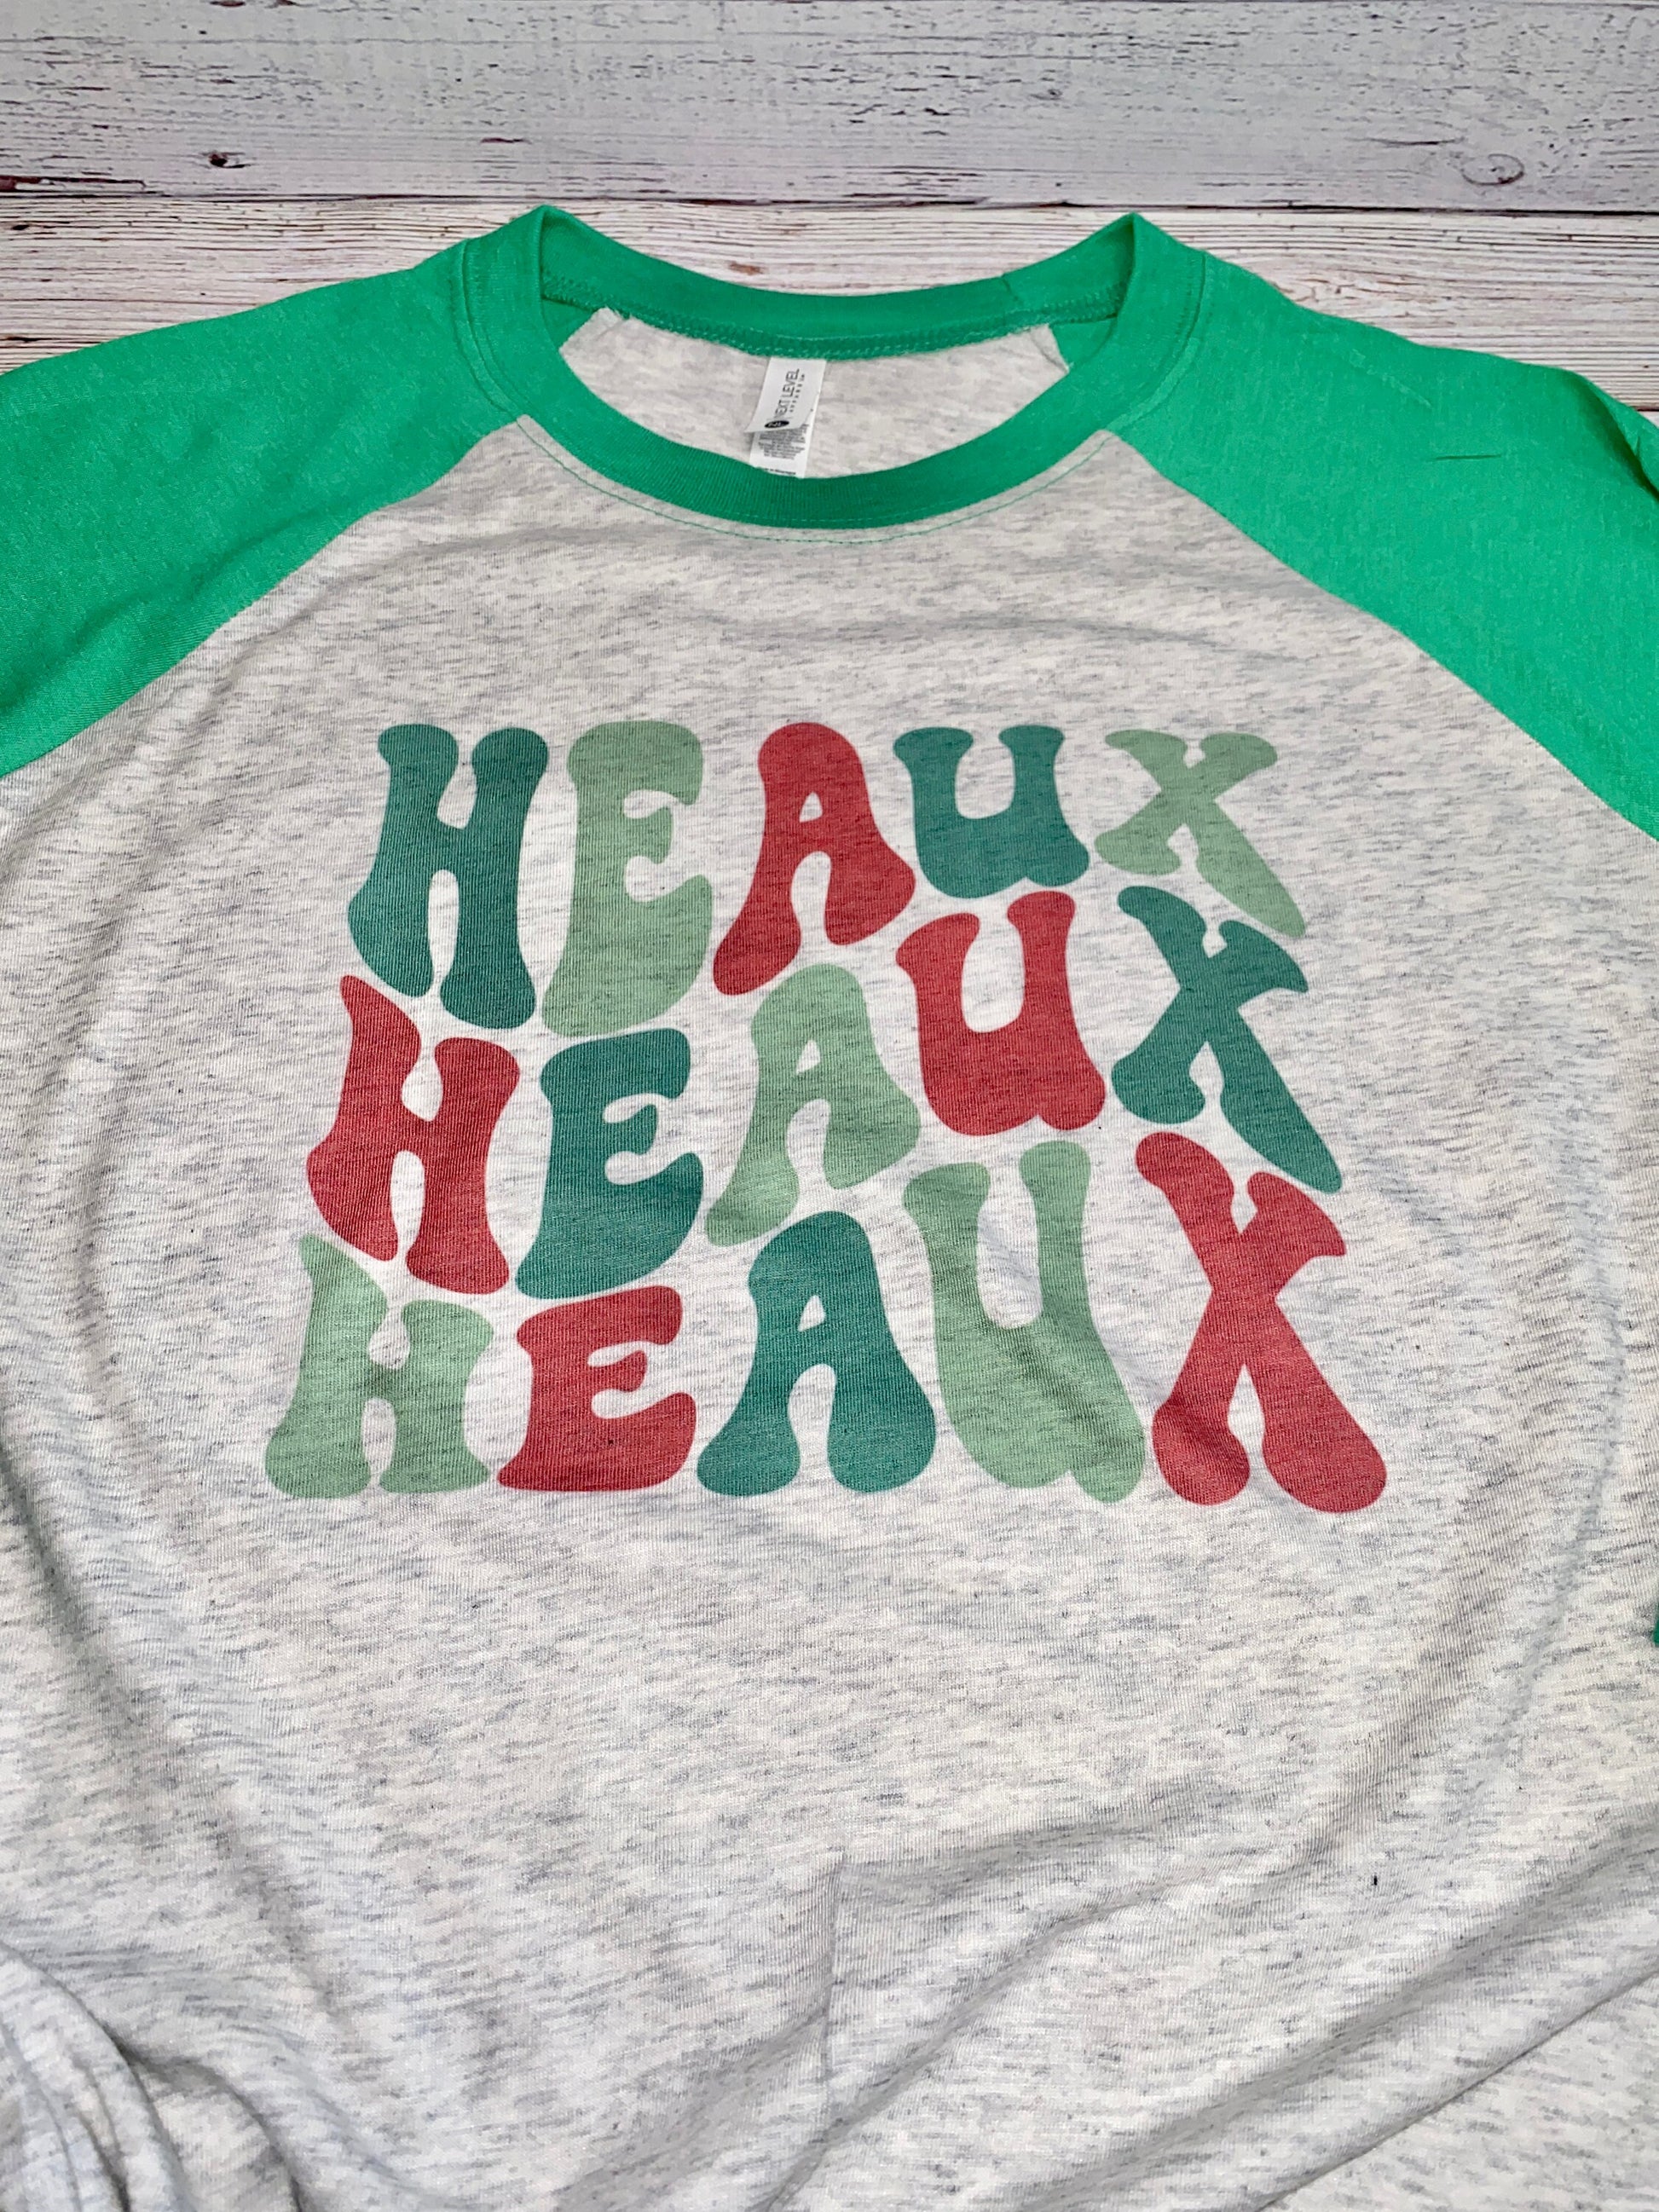 Heaux Heaux Heaux Raglan Shirt, Cajun Christmas T-shirt, Holiday Shirt, Louisiana Ho Ho Ho Shirt, Retro Cajun Wording, Cajun Gifts Louisiana